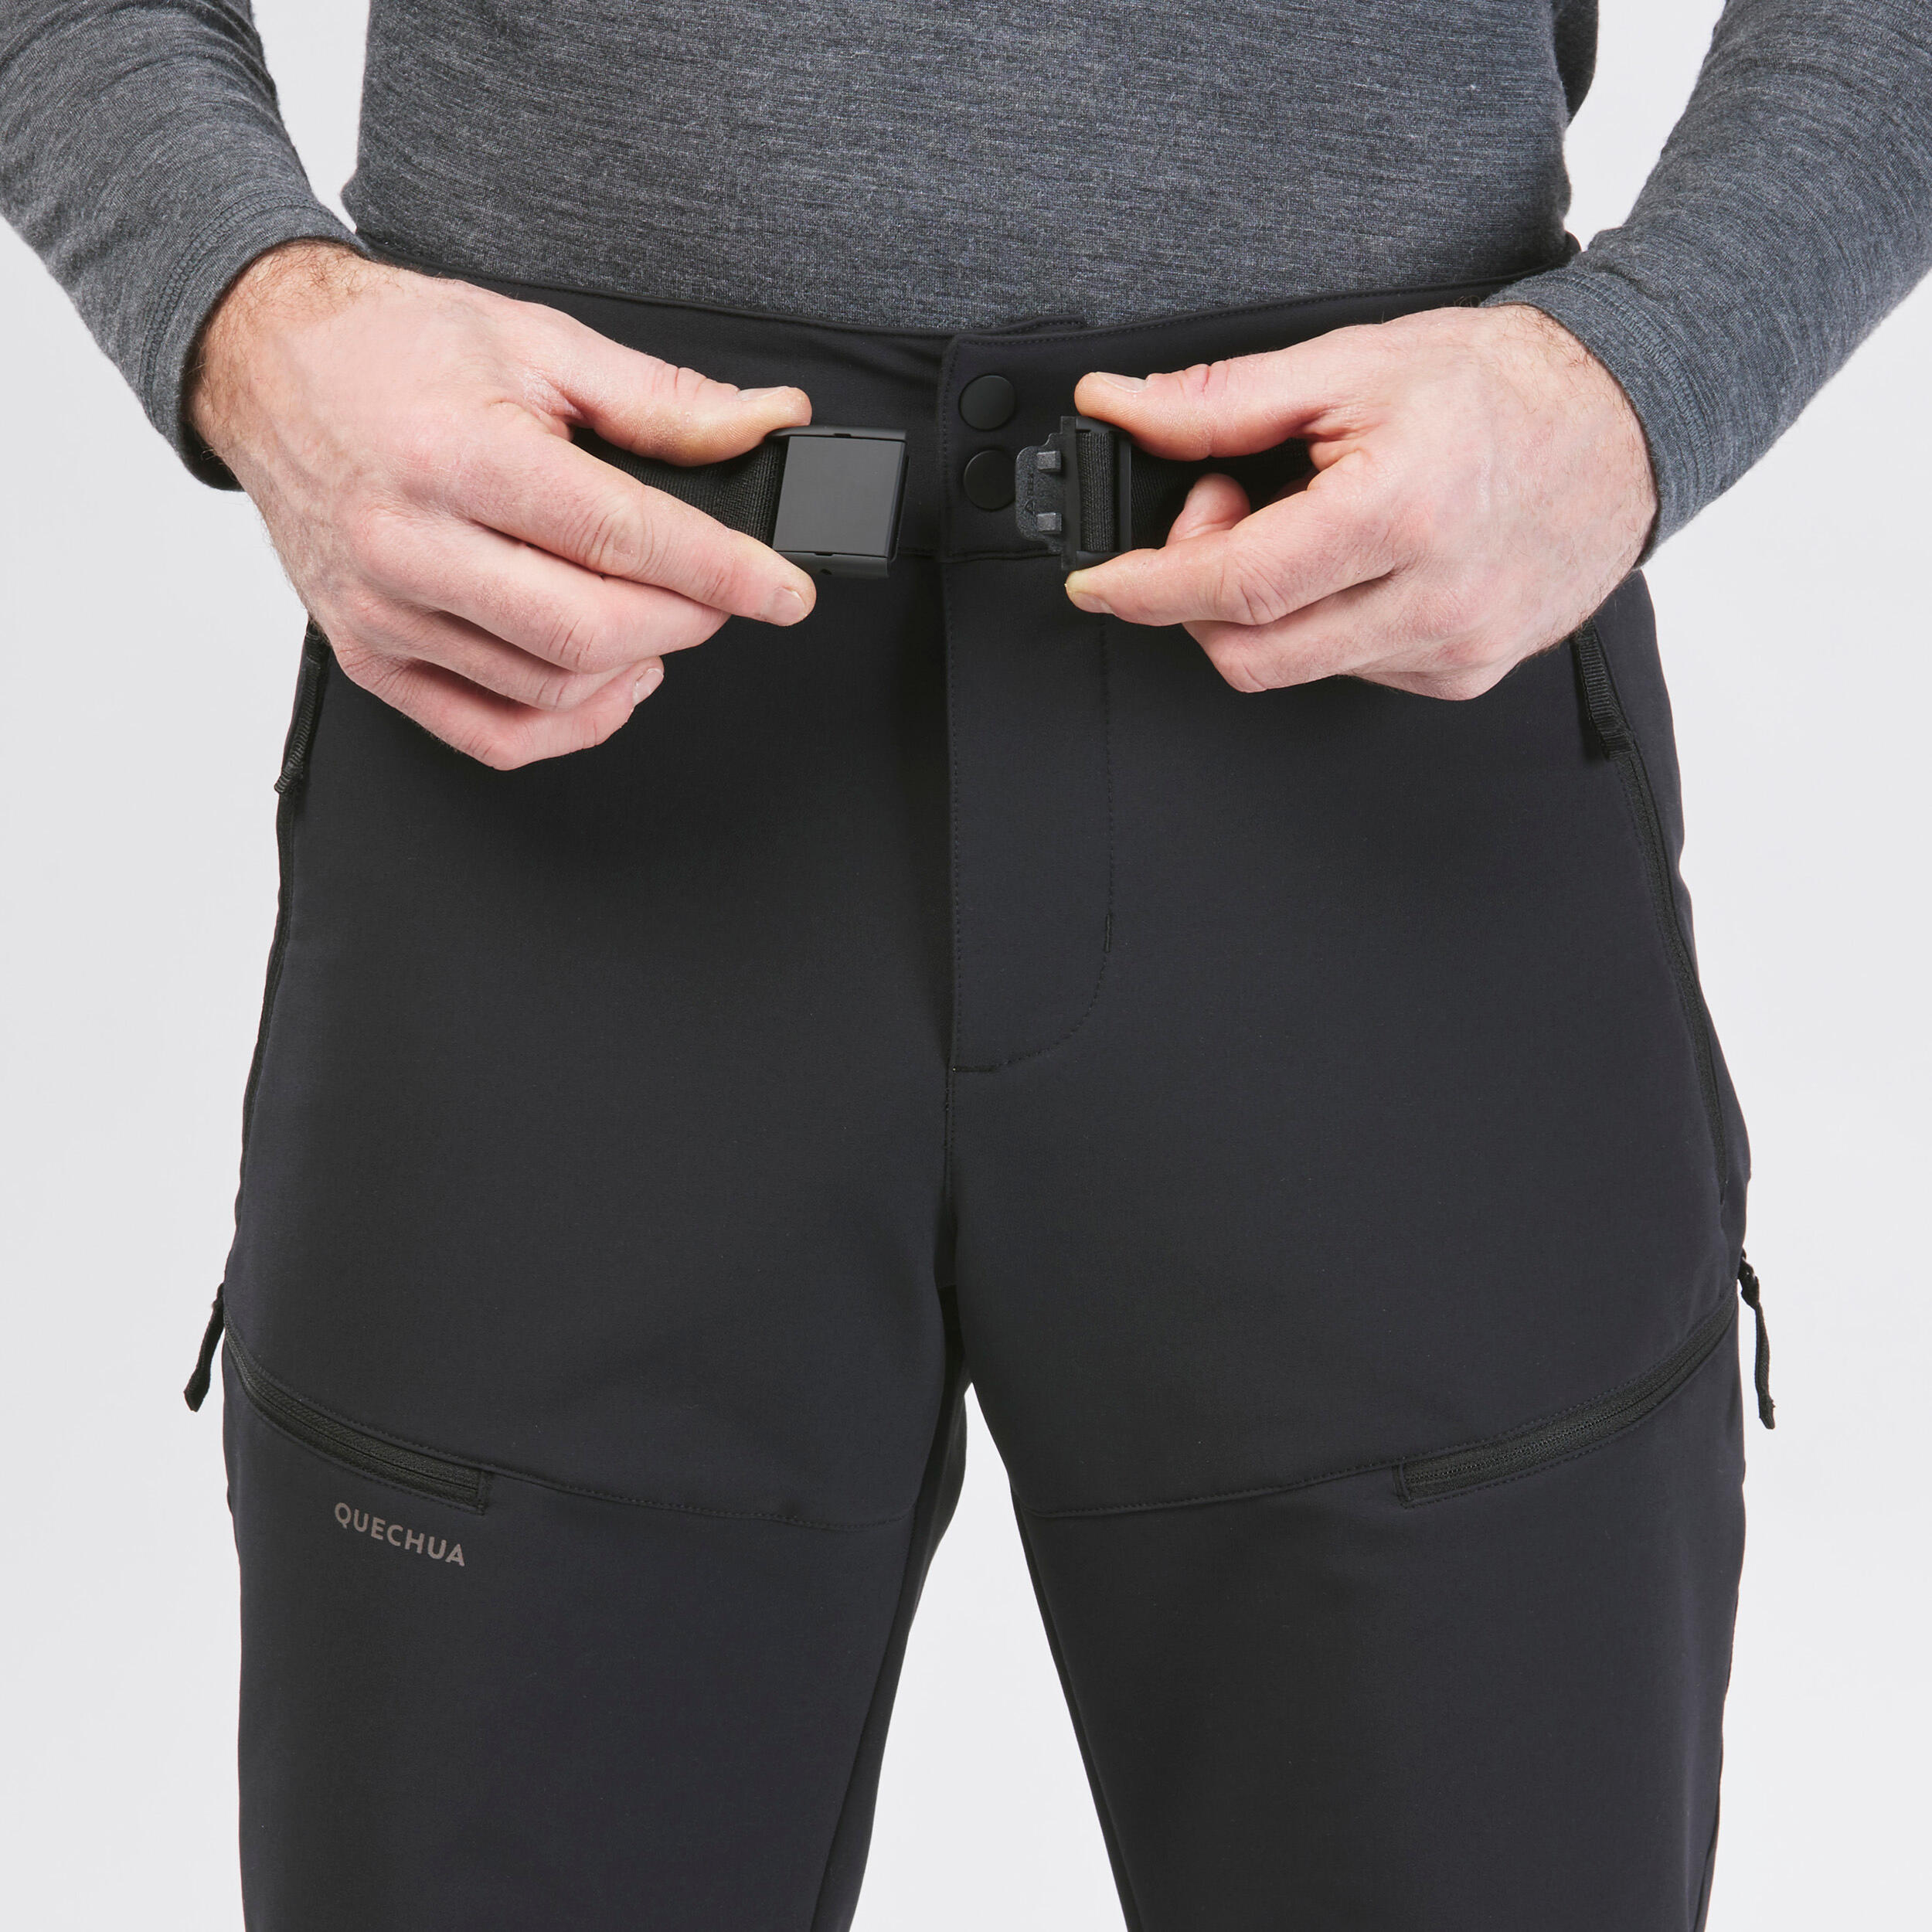 Pantalon chaud homme – SH 500 noir - Noir - Quechua - Décathlon